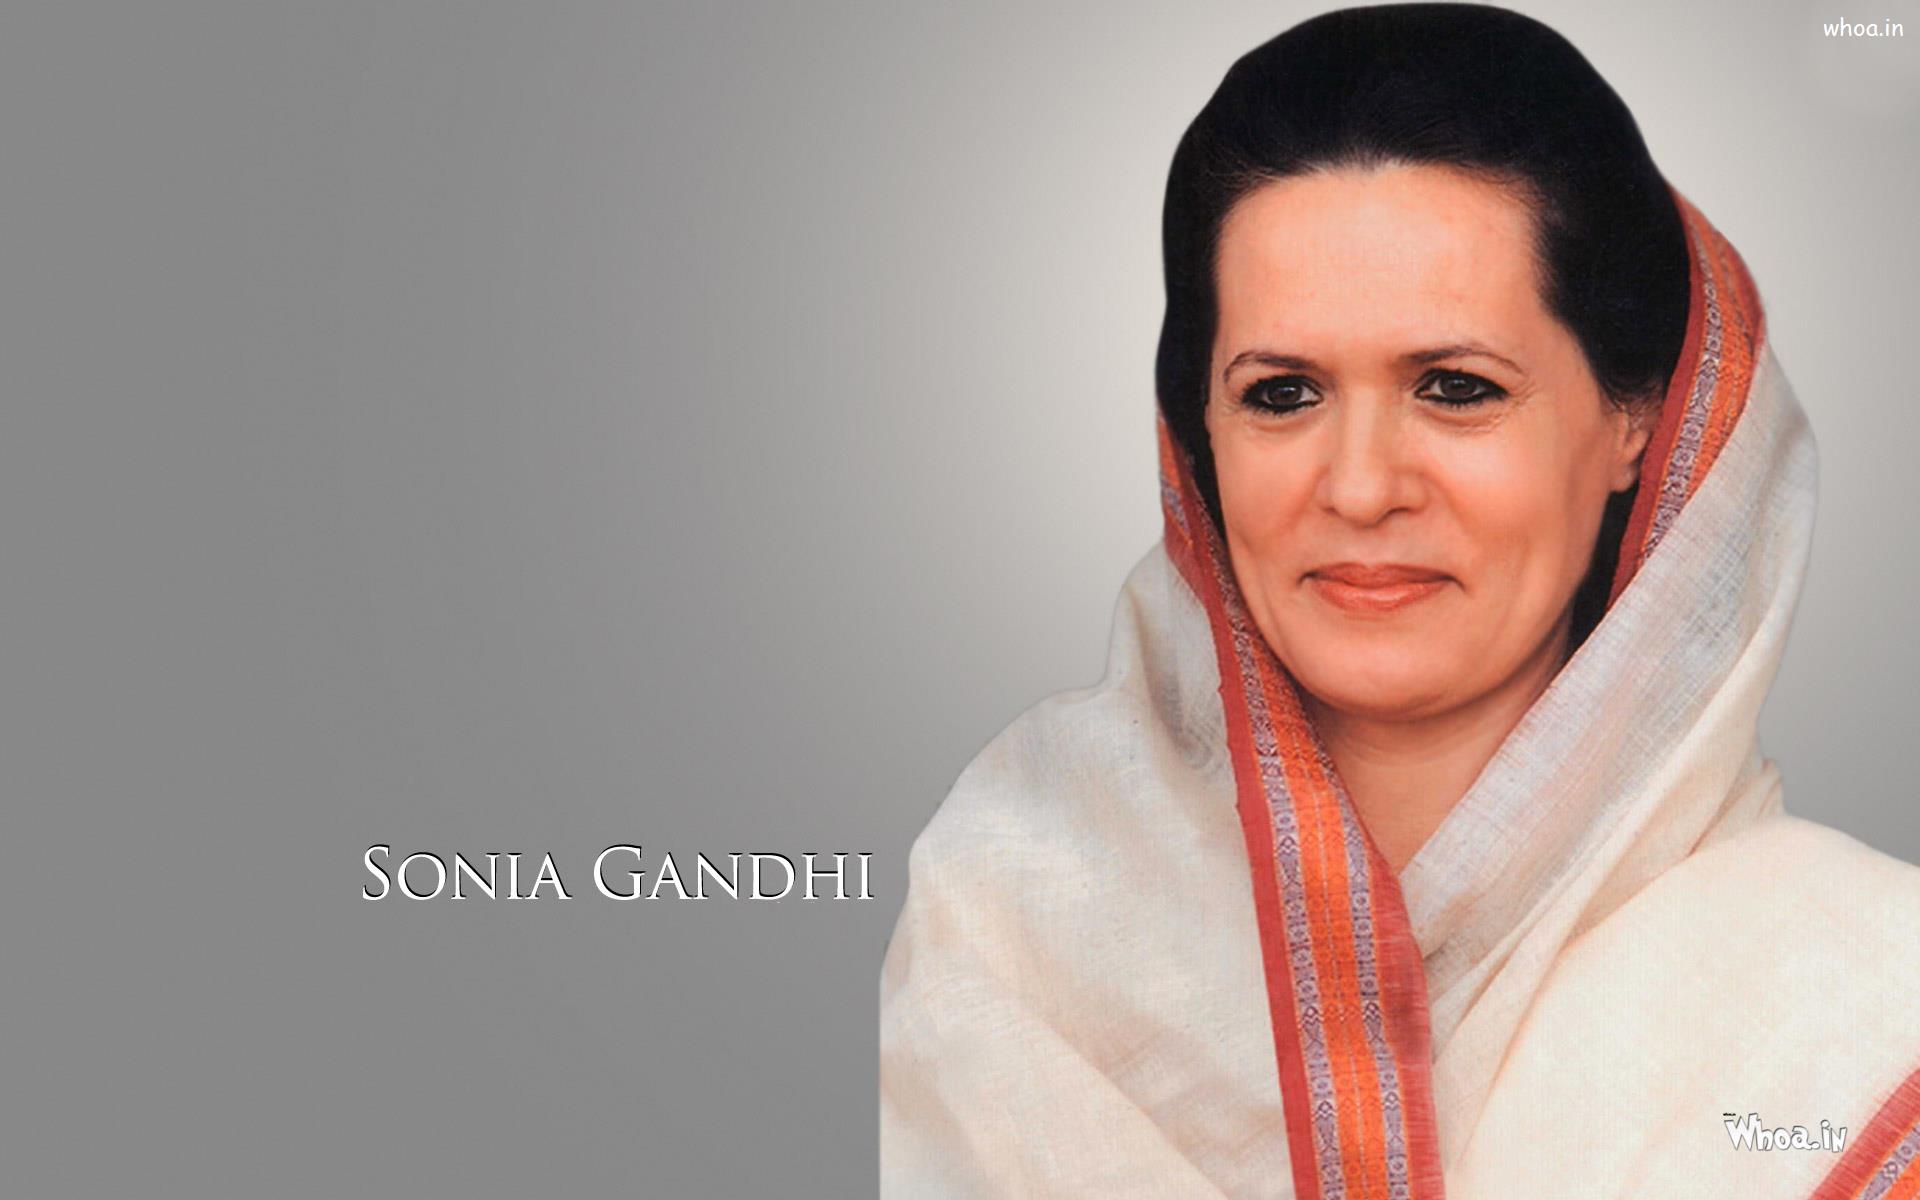 Sonia Gandhi Birthday Wishes   1920x1200 Wallpaper   teahubio 1920x1200